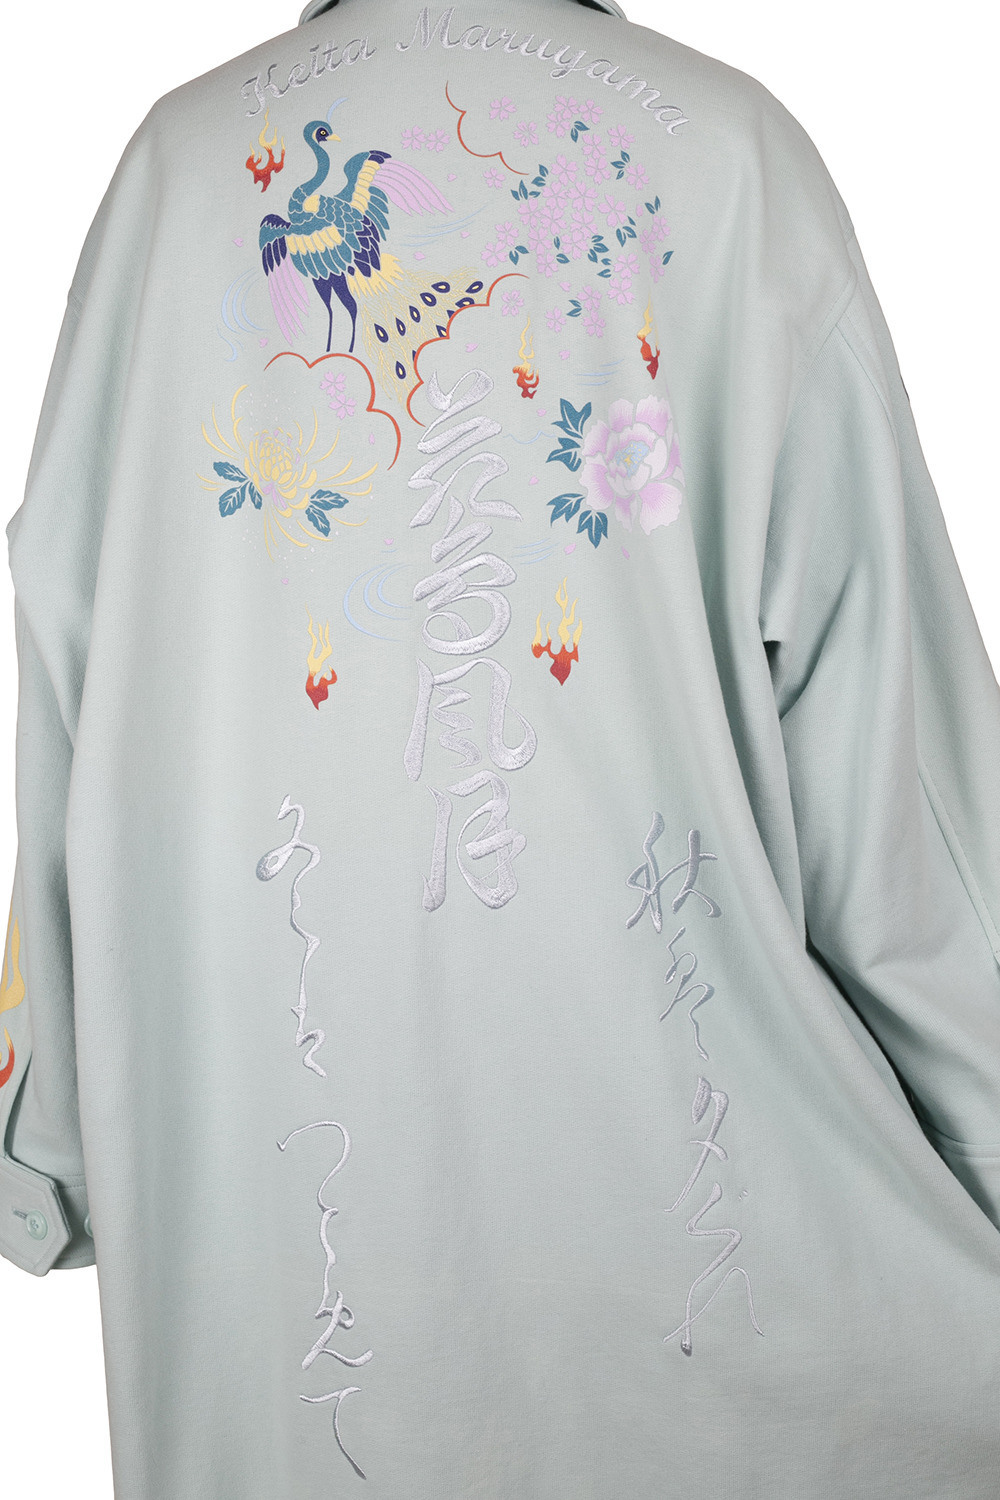 ケイタマルヤマ 刺繍ジャケット 1 | guardline.kz